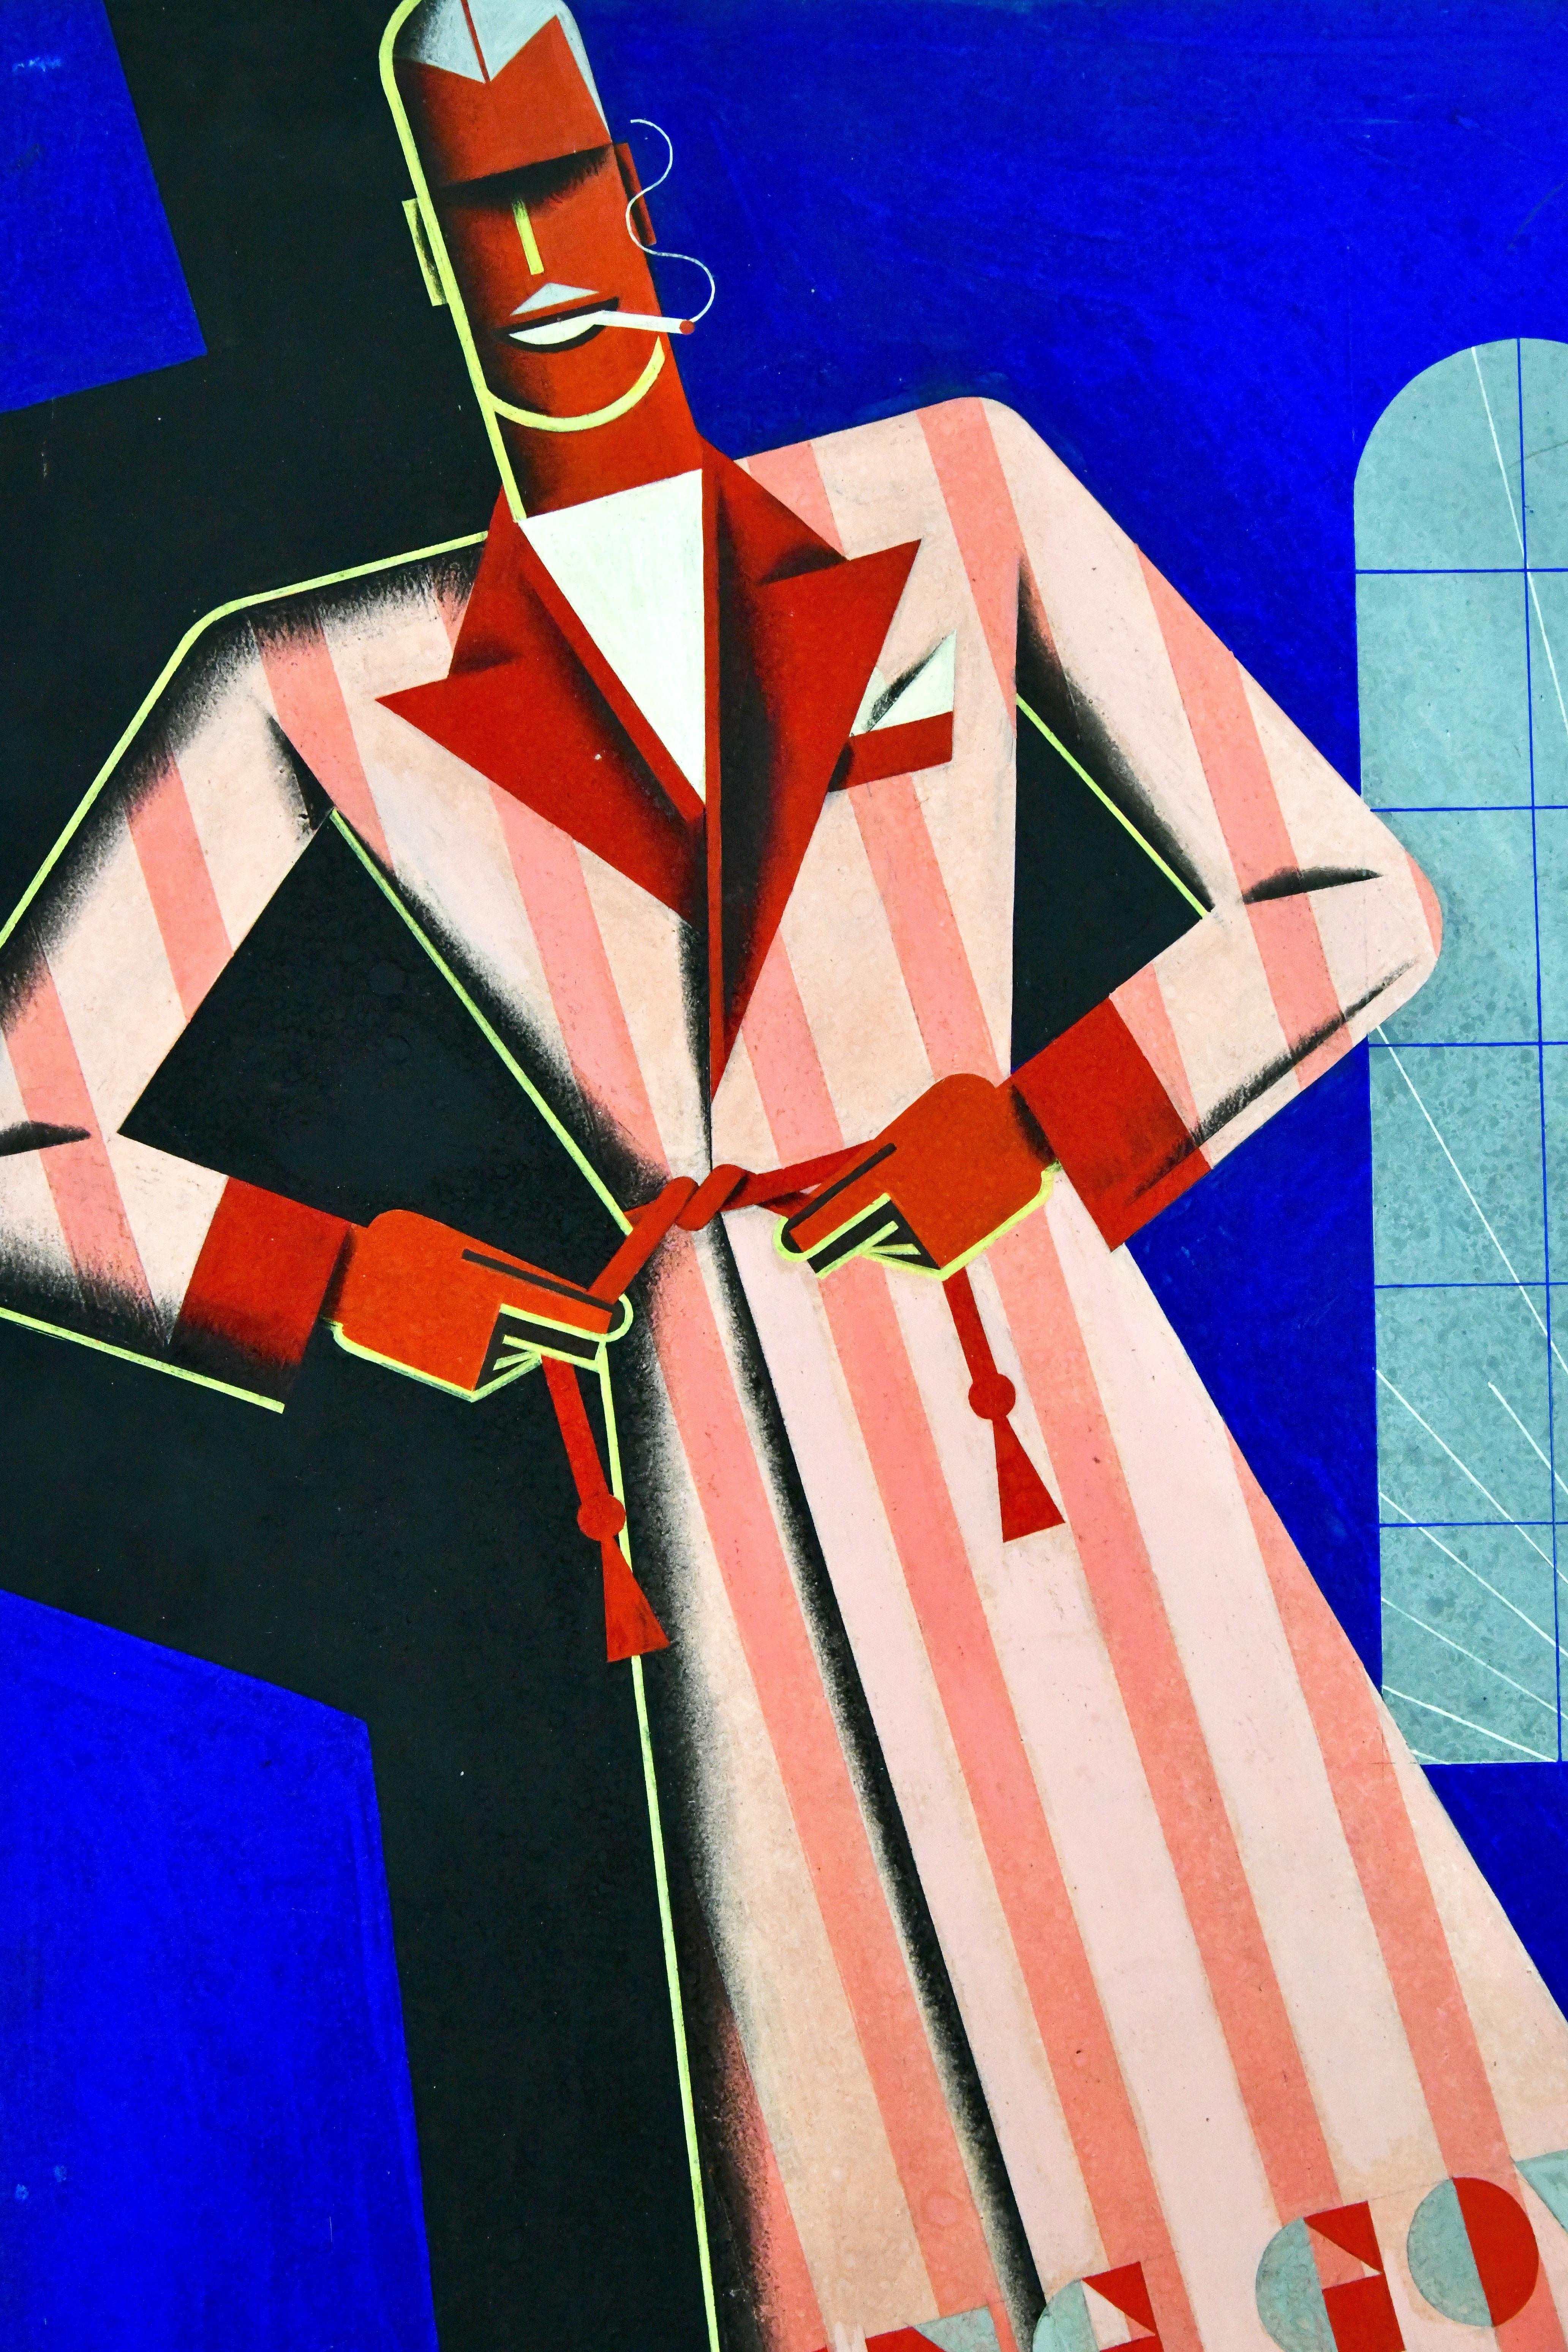 Affiche Art déco représentant un homme en robe de chambre par Theodor Kindel. Gouache sur papier posé sur carton. Non encadré. Autriche 1920/1940. Theodor Kindel est un artiste graphique connu qui a travaillé à Vienne entre 1920 et 1940. Il était le